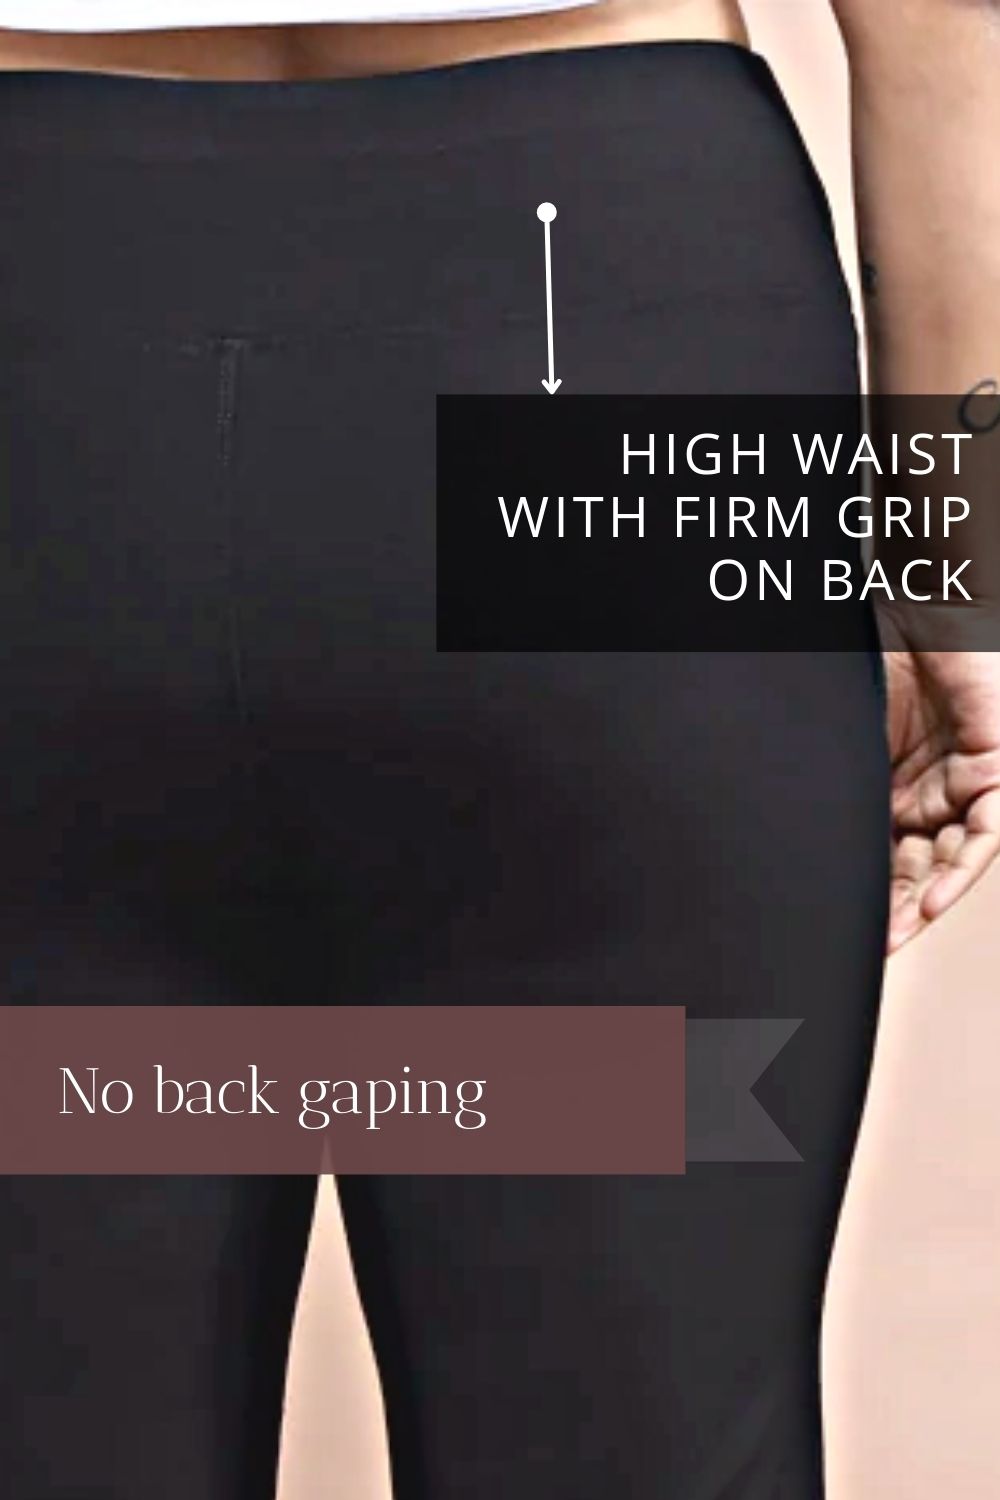 Buy Plus Size Black Tummy Shaper Bell Bottom Online For Women